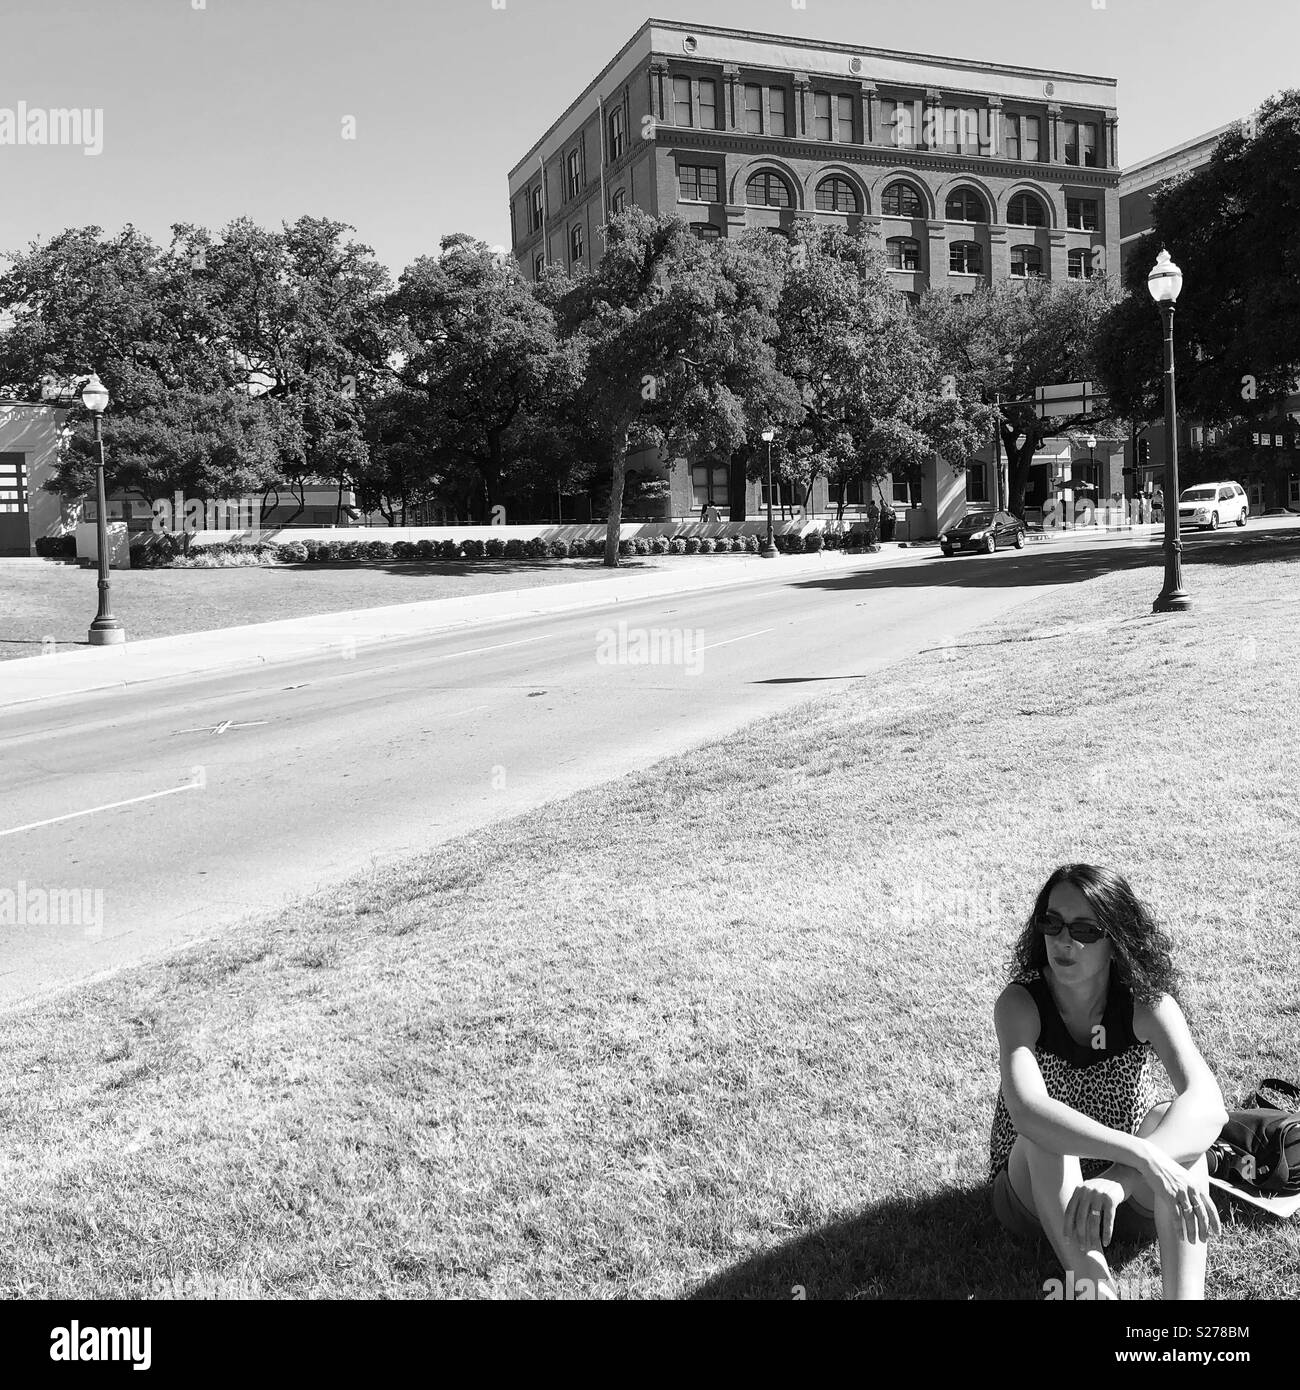 La 'colline' à Dealey Plaza, Dallas, Texas, où vous pouvez voir le 'X' dans la rue, où Kennedy a été assassiné et dépôt de livres le bâtiment en arrière-plan Banque D'Images